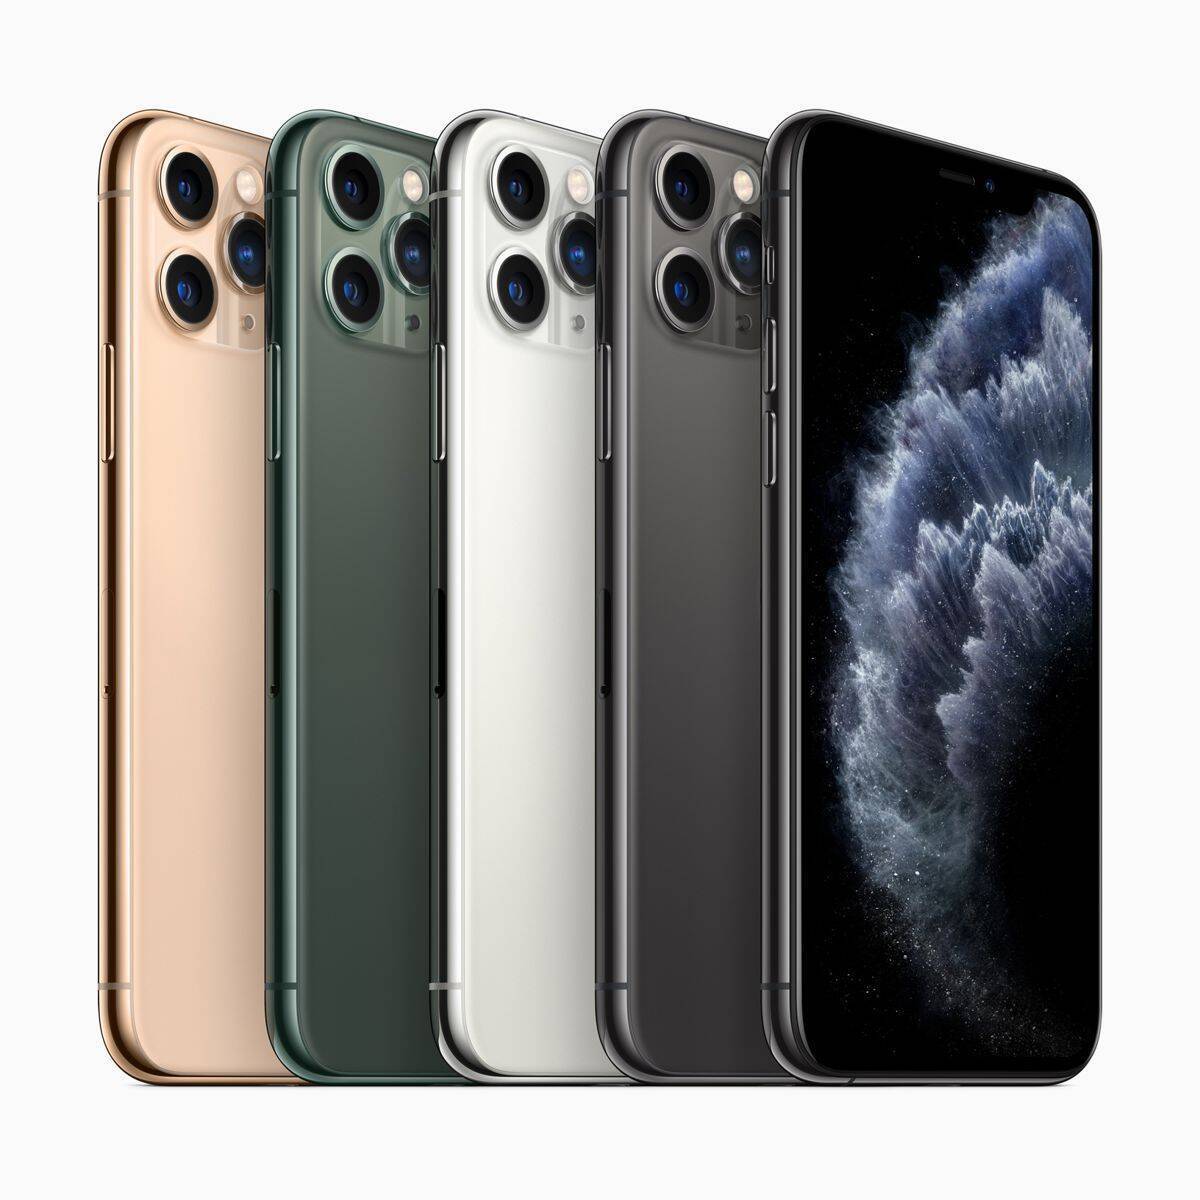 Iphone 12のスペックがリーク 4機種とも5g対応 2020年4月8日